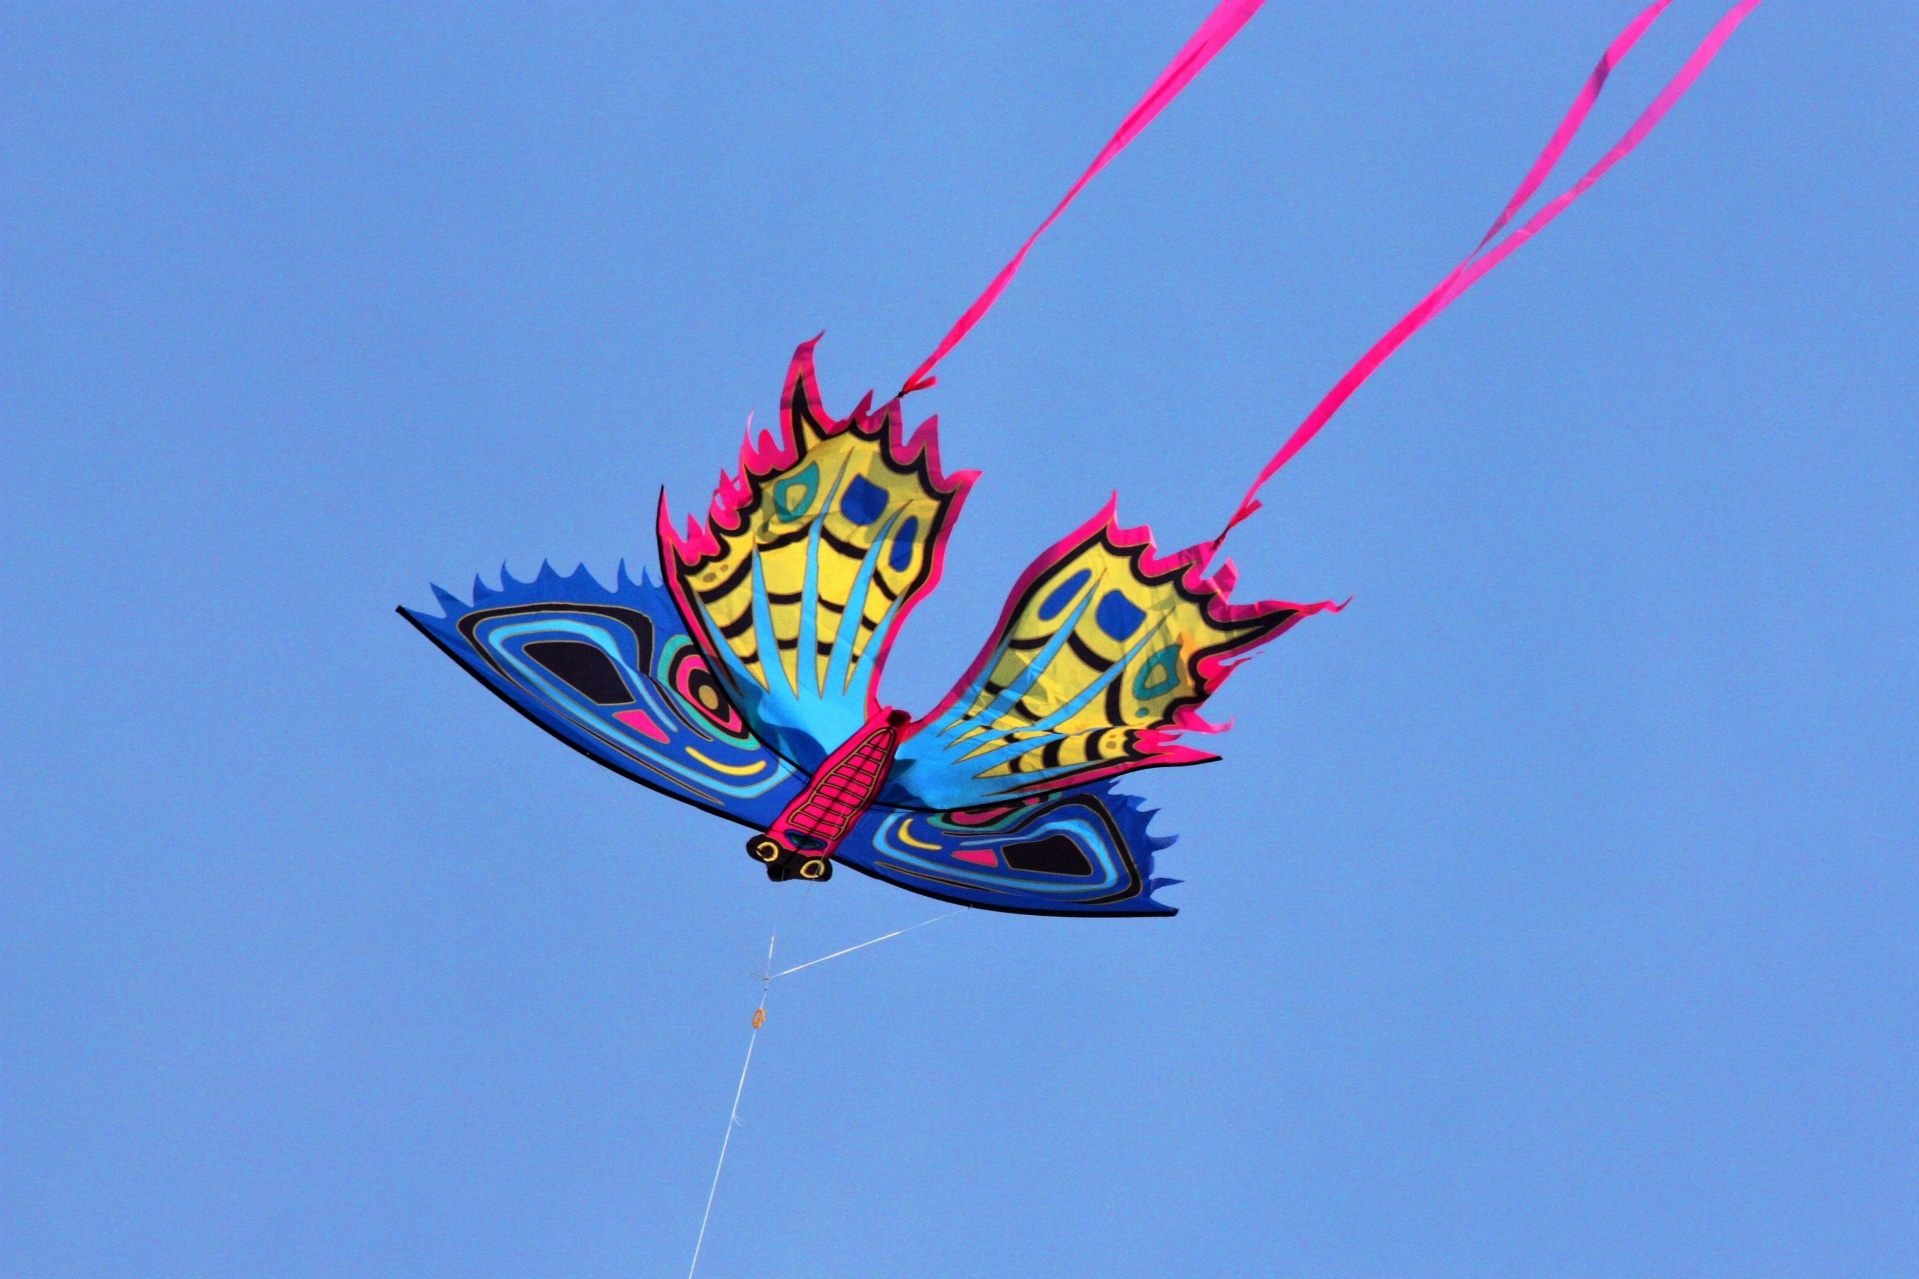 kite sport fun free photo